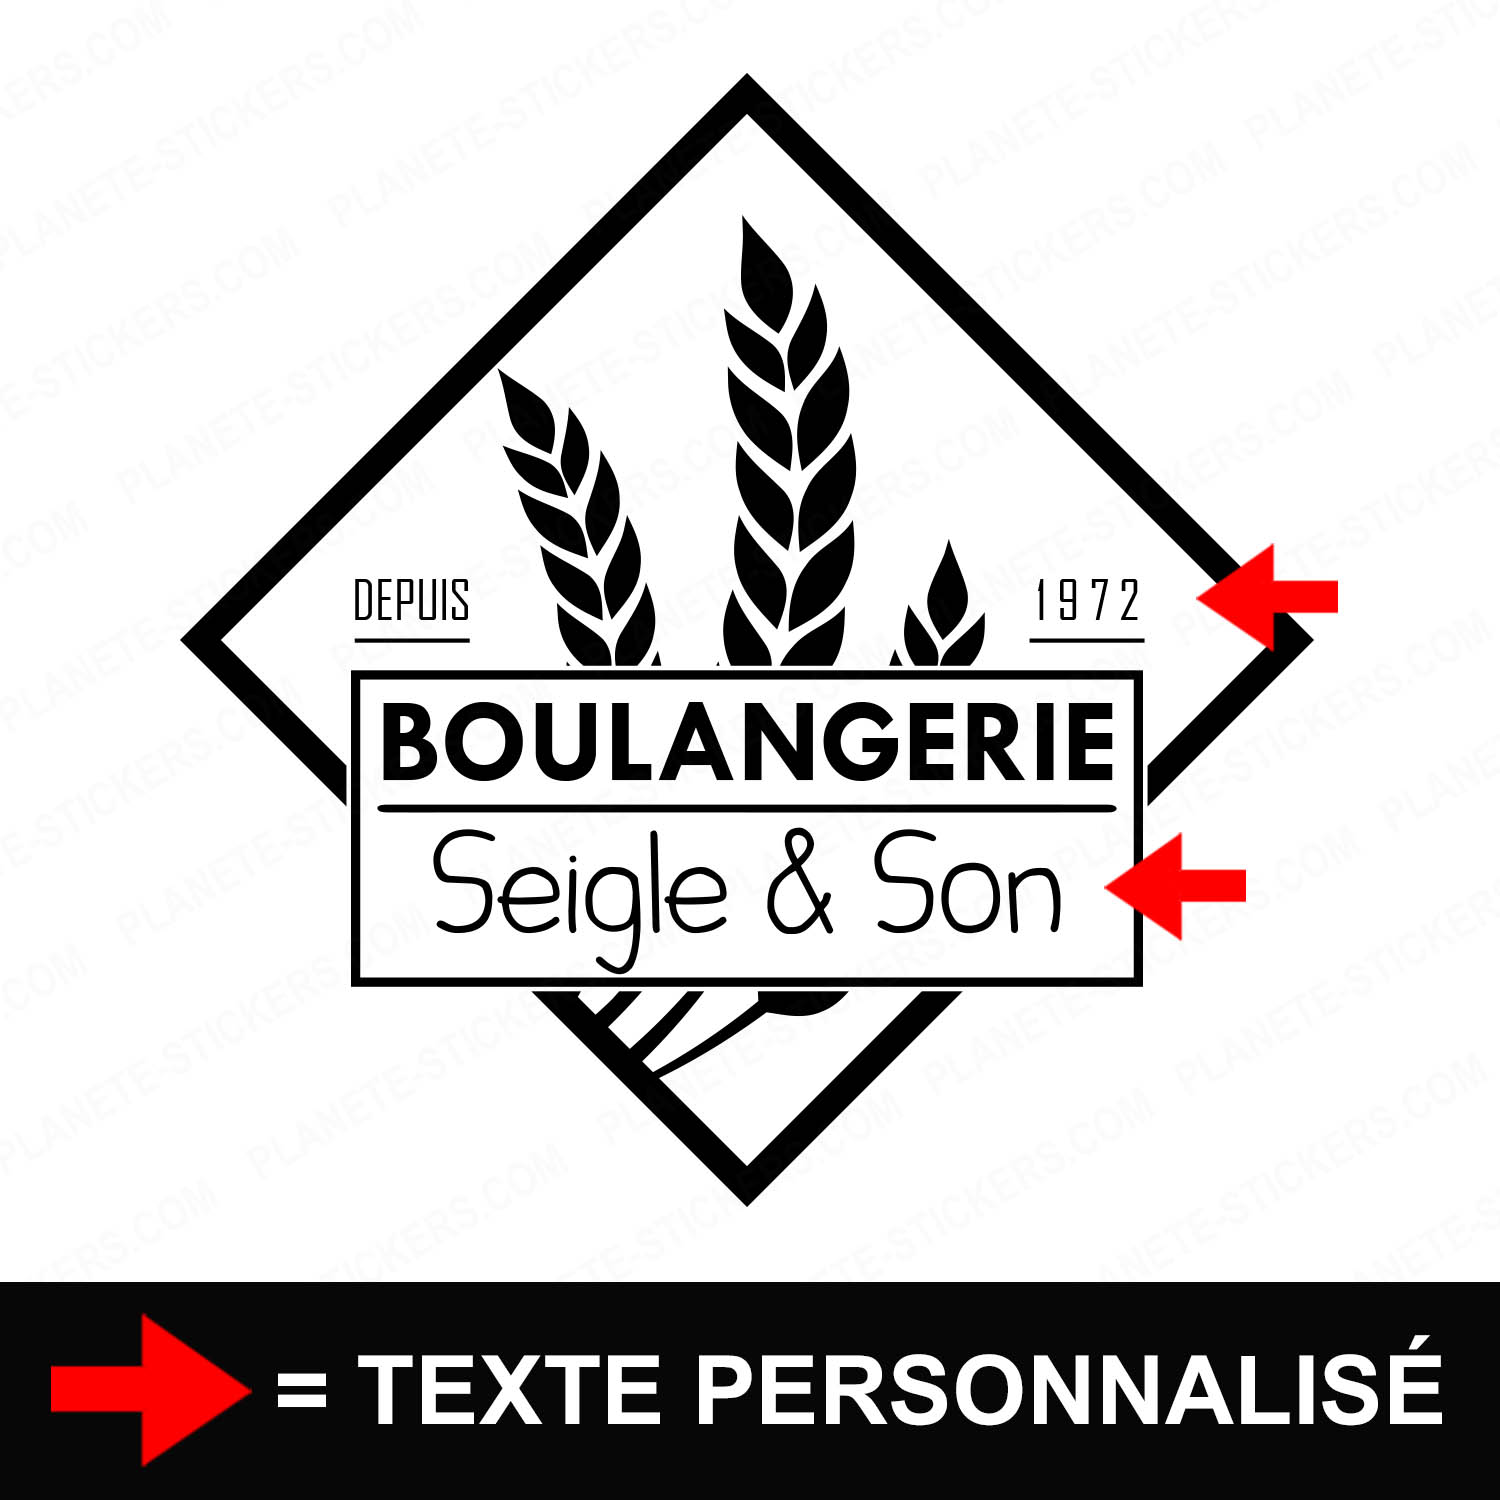 ref3boulangerievitrine-stickers-boulangerie-vitrine-sticker-personnalisé-autocollant-boutique-pro-boulanger-ble-professionnel-2